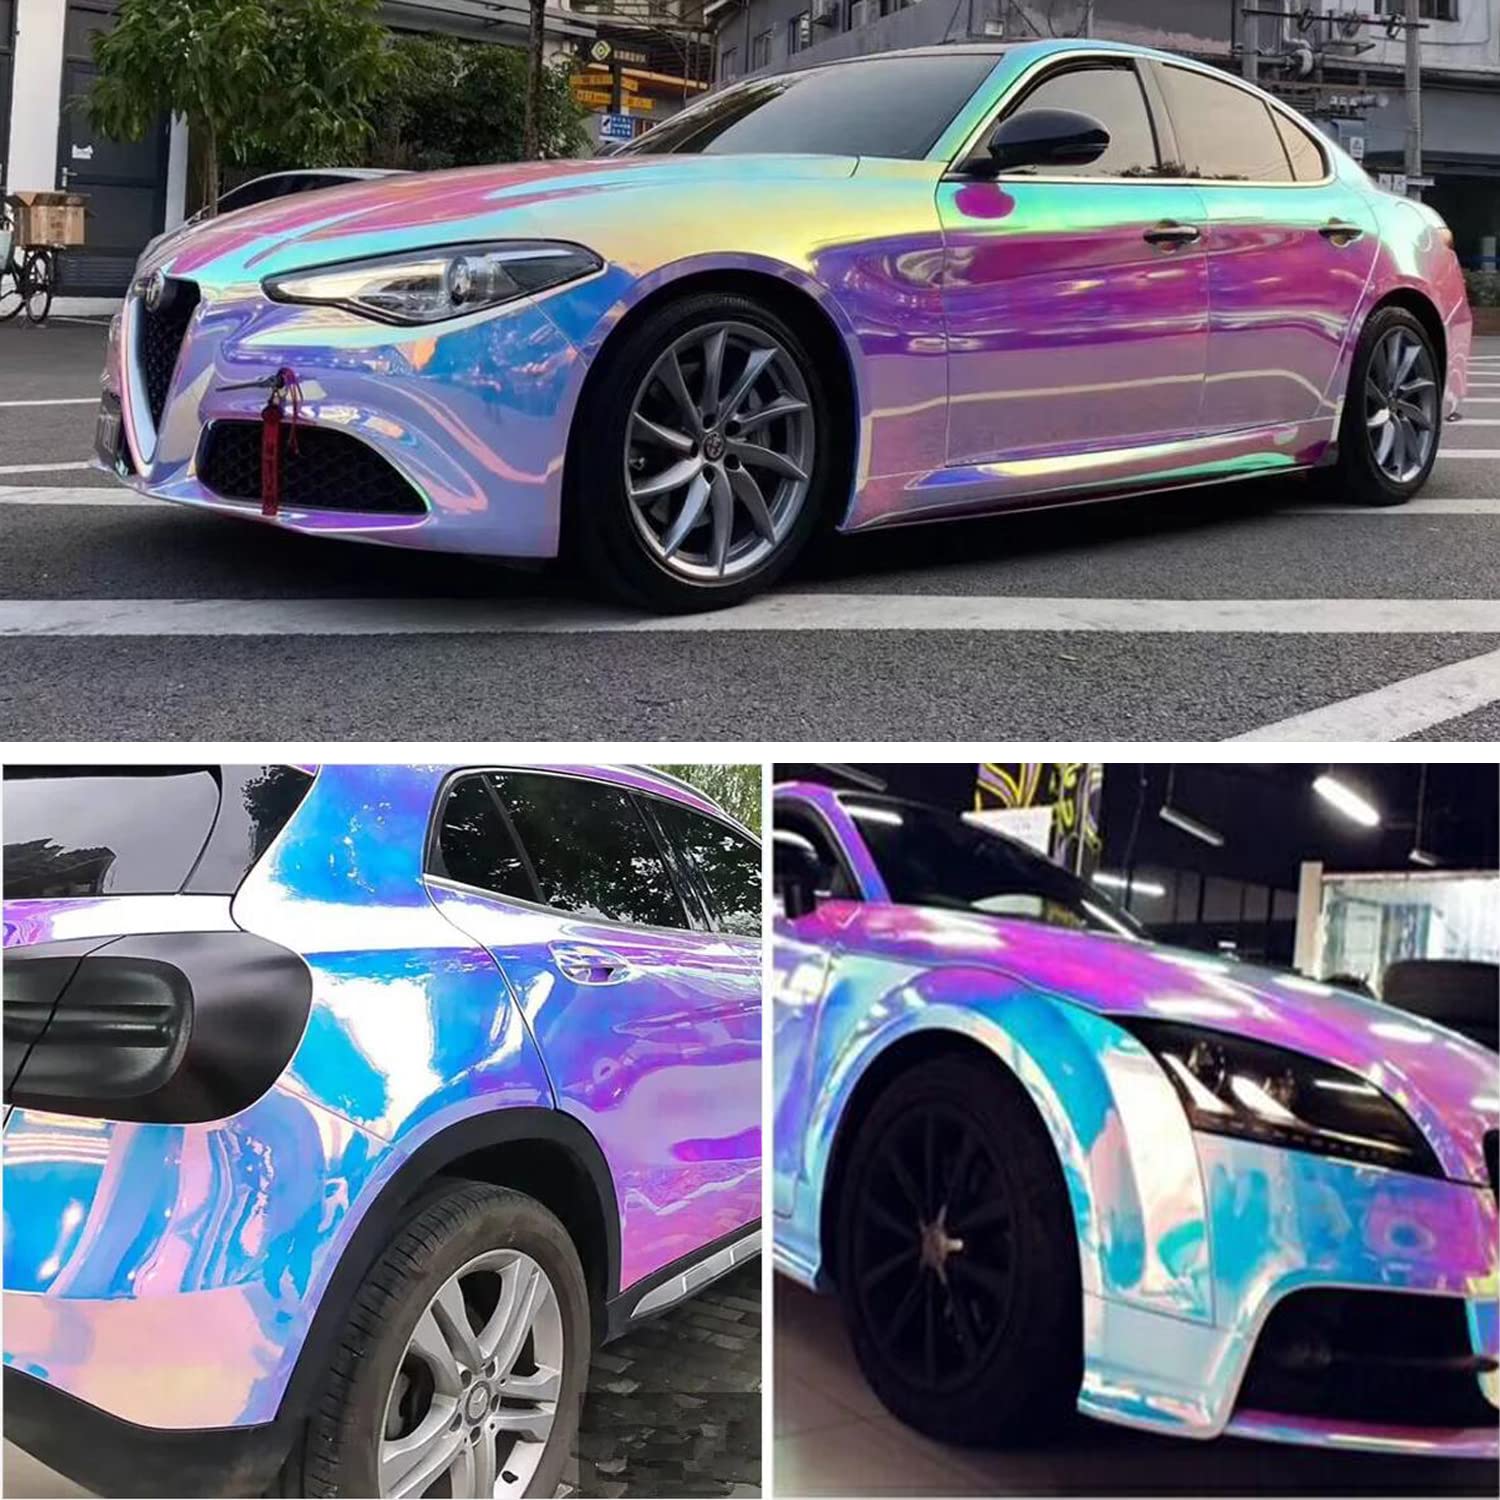 Rainbow effect pigment for automotive paint